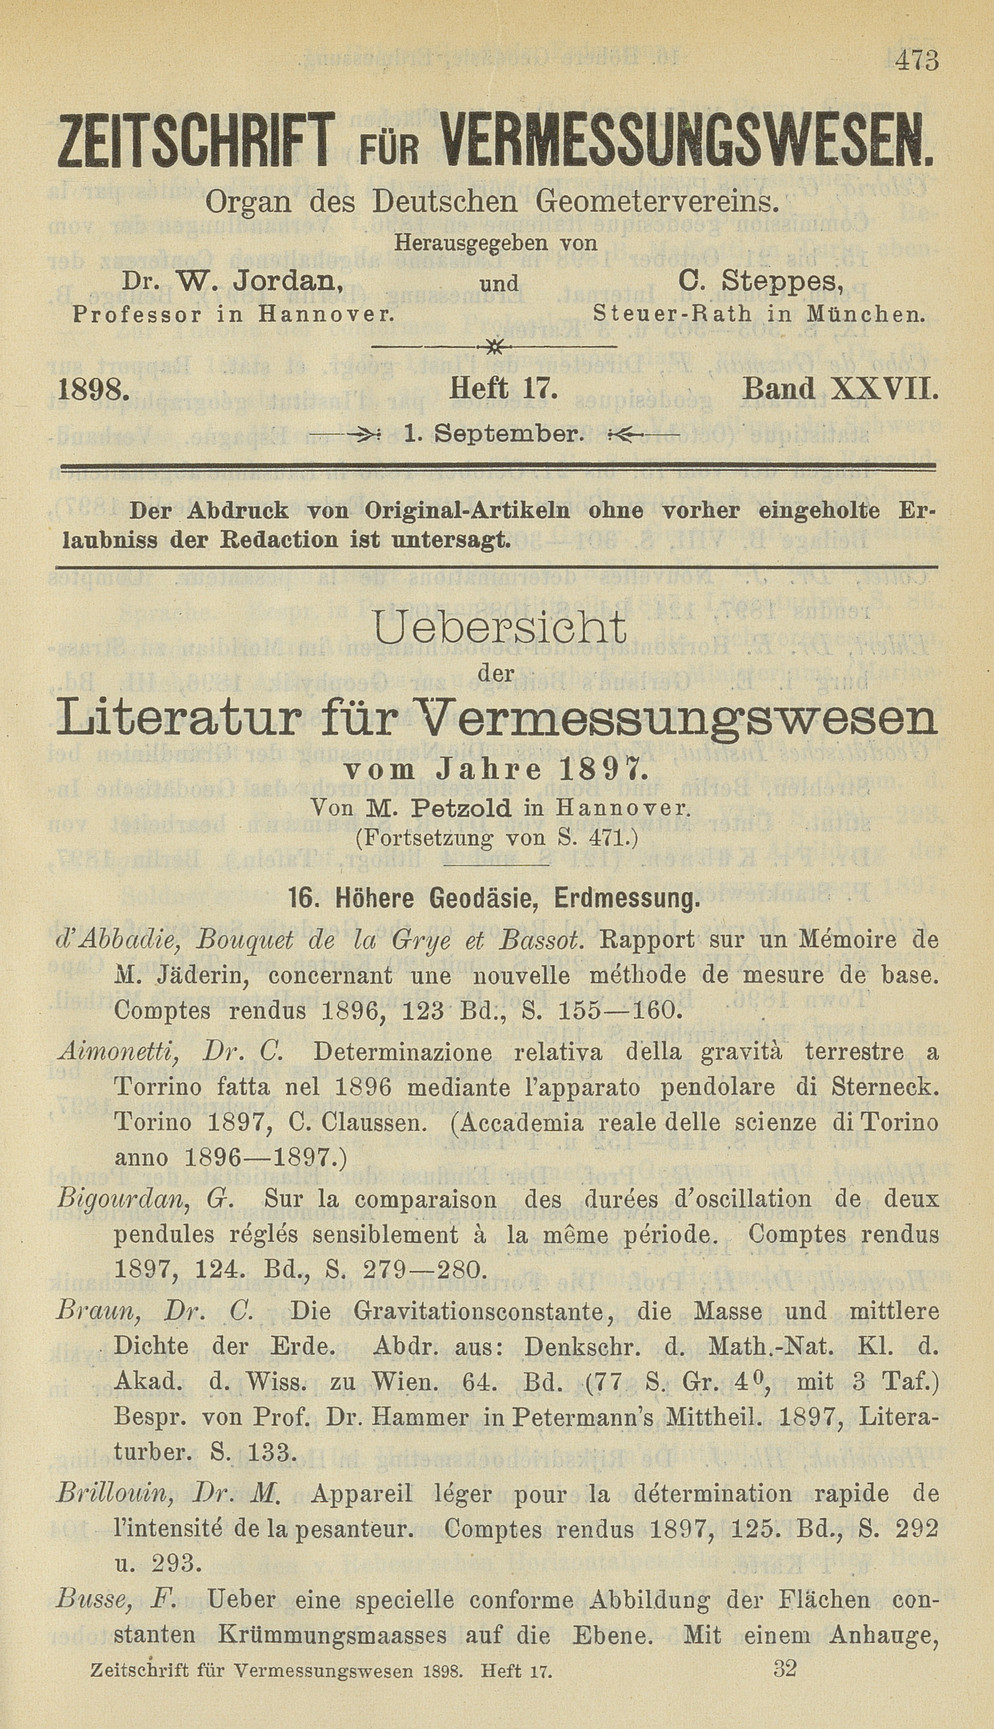 Zeitschrift für Vermessungswesen, Heft 17, Band XXVII